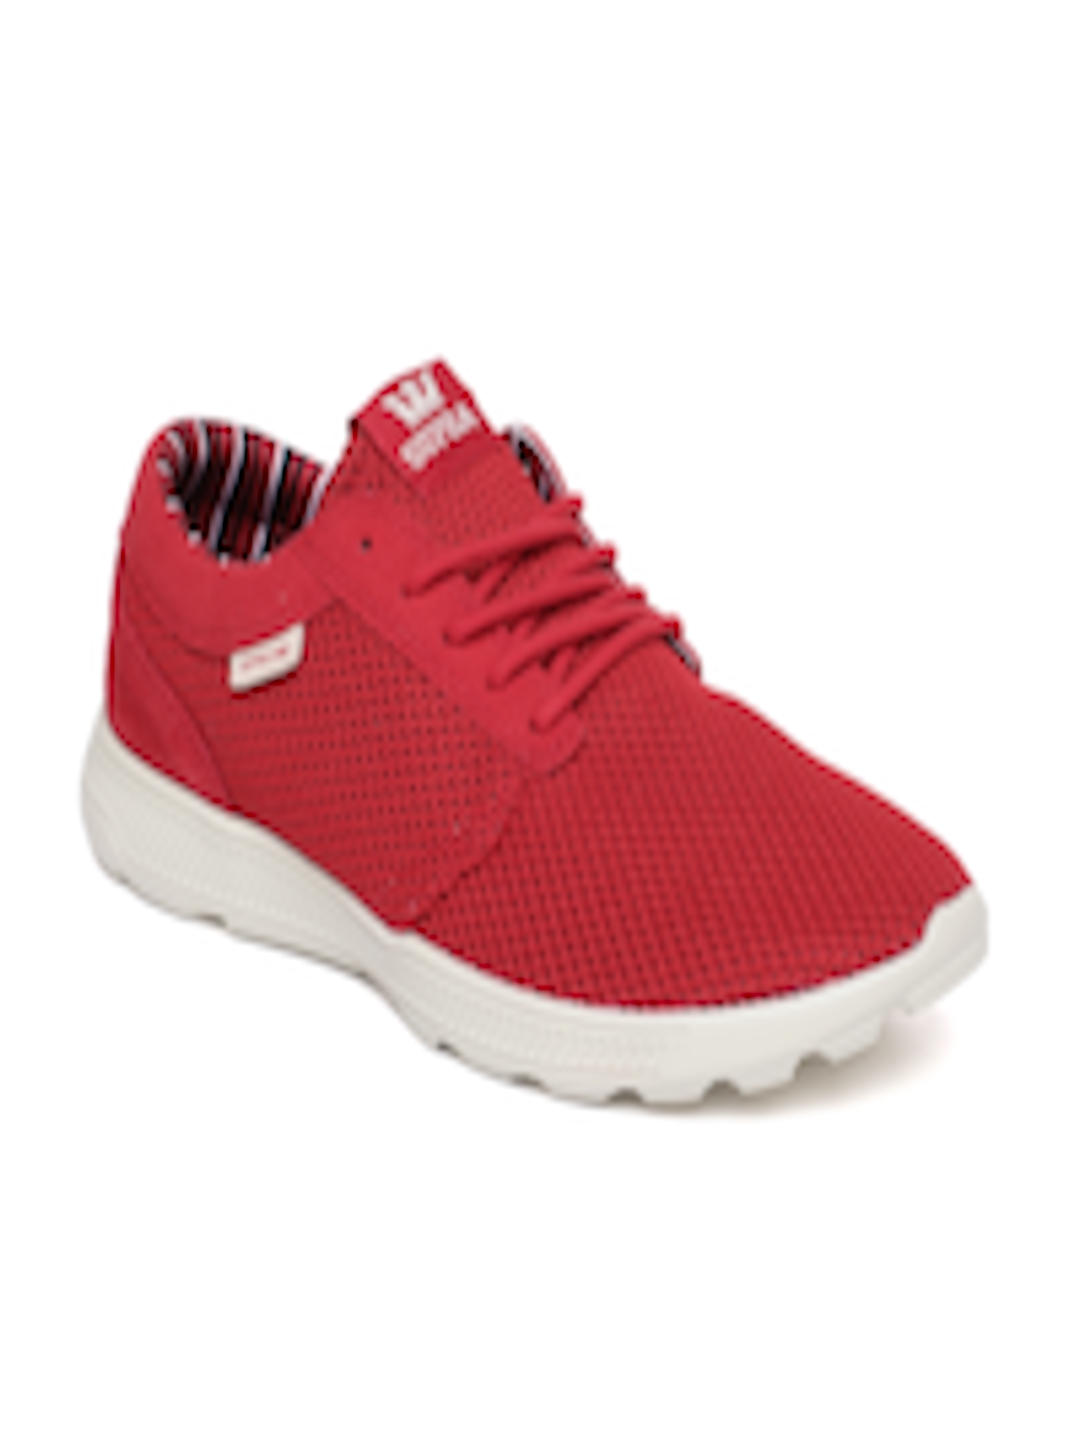 Buy Supra Men Red HAMMER RUN Sneakers - Casual Shoes for Men 8419745 ...